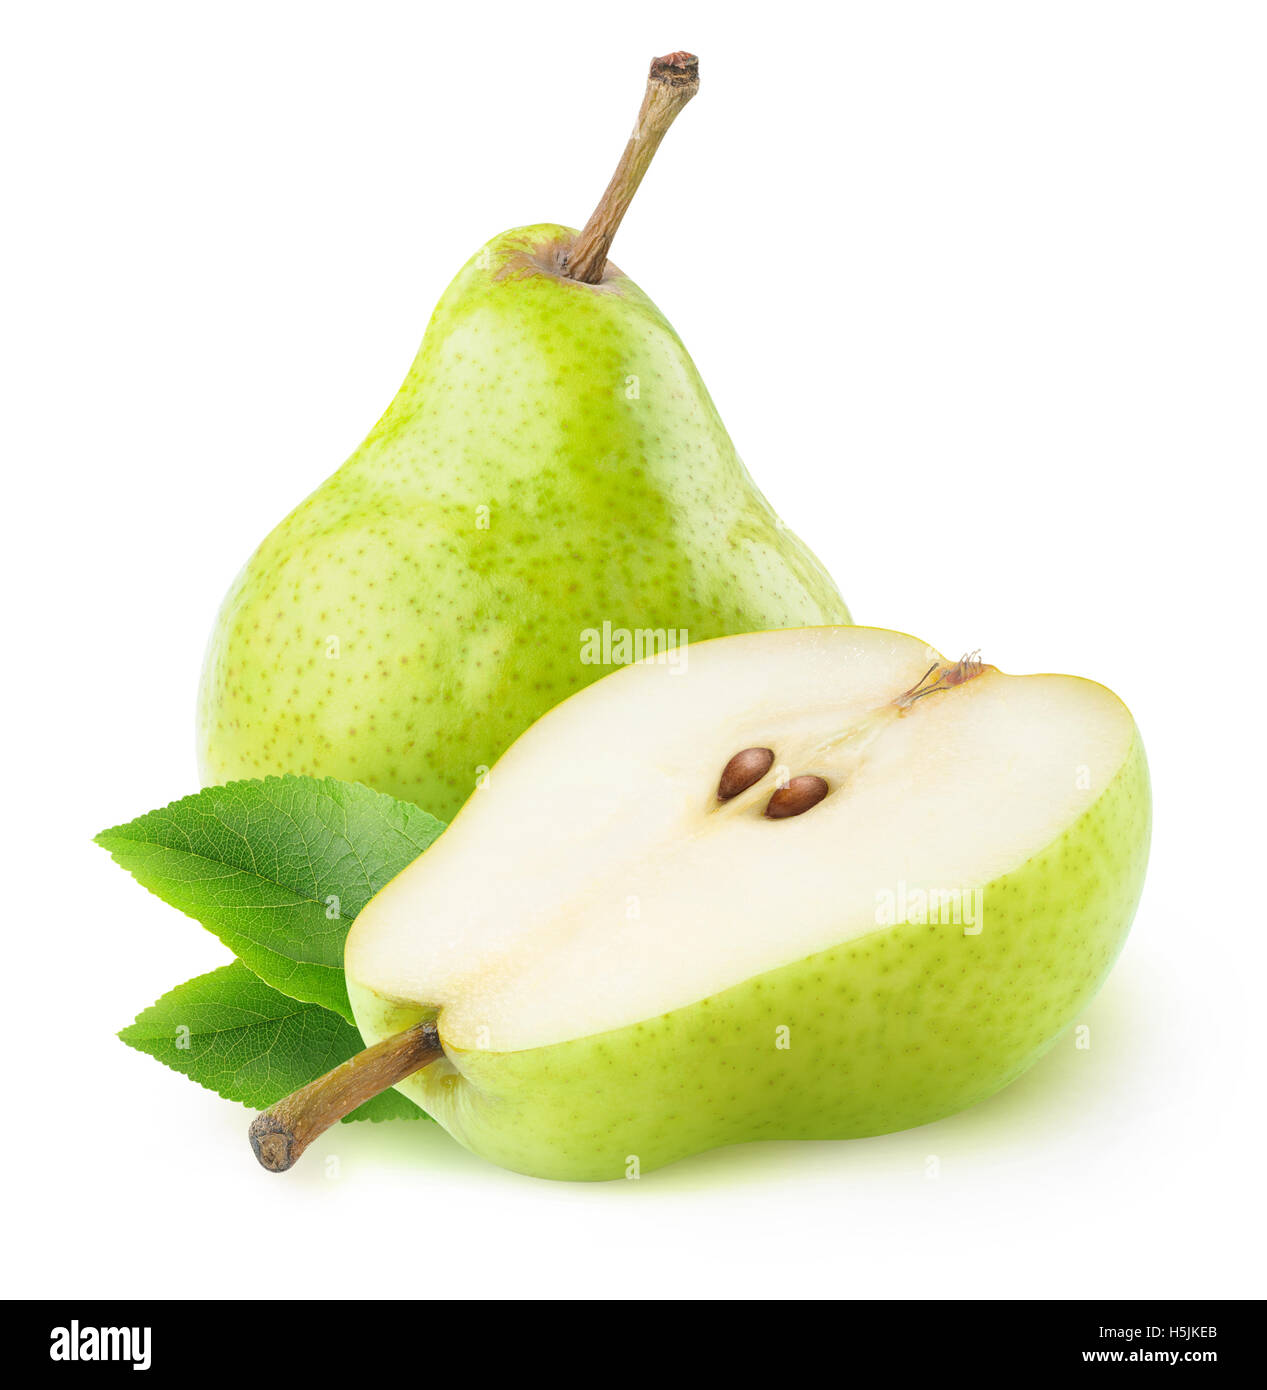 Isolato di pere. Una volta e mezza pera verde frutto isolato su sfondo bianco con tracciato di ritaglio Foto Stock